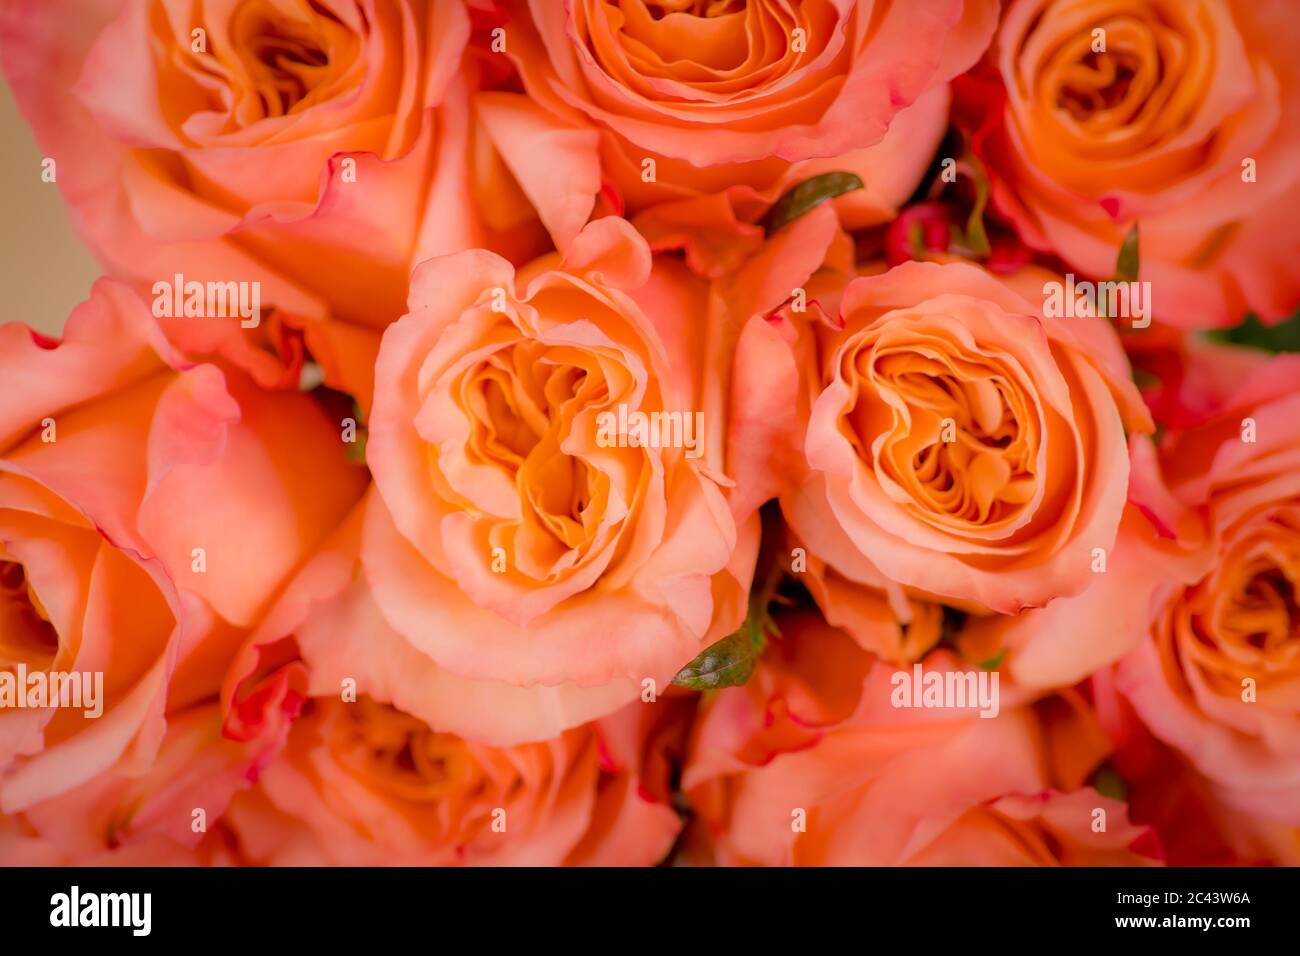 Gros plan macro de la variété de roses Shimmer pêche, prise de vue en studio. Banque D'Images